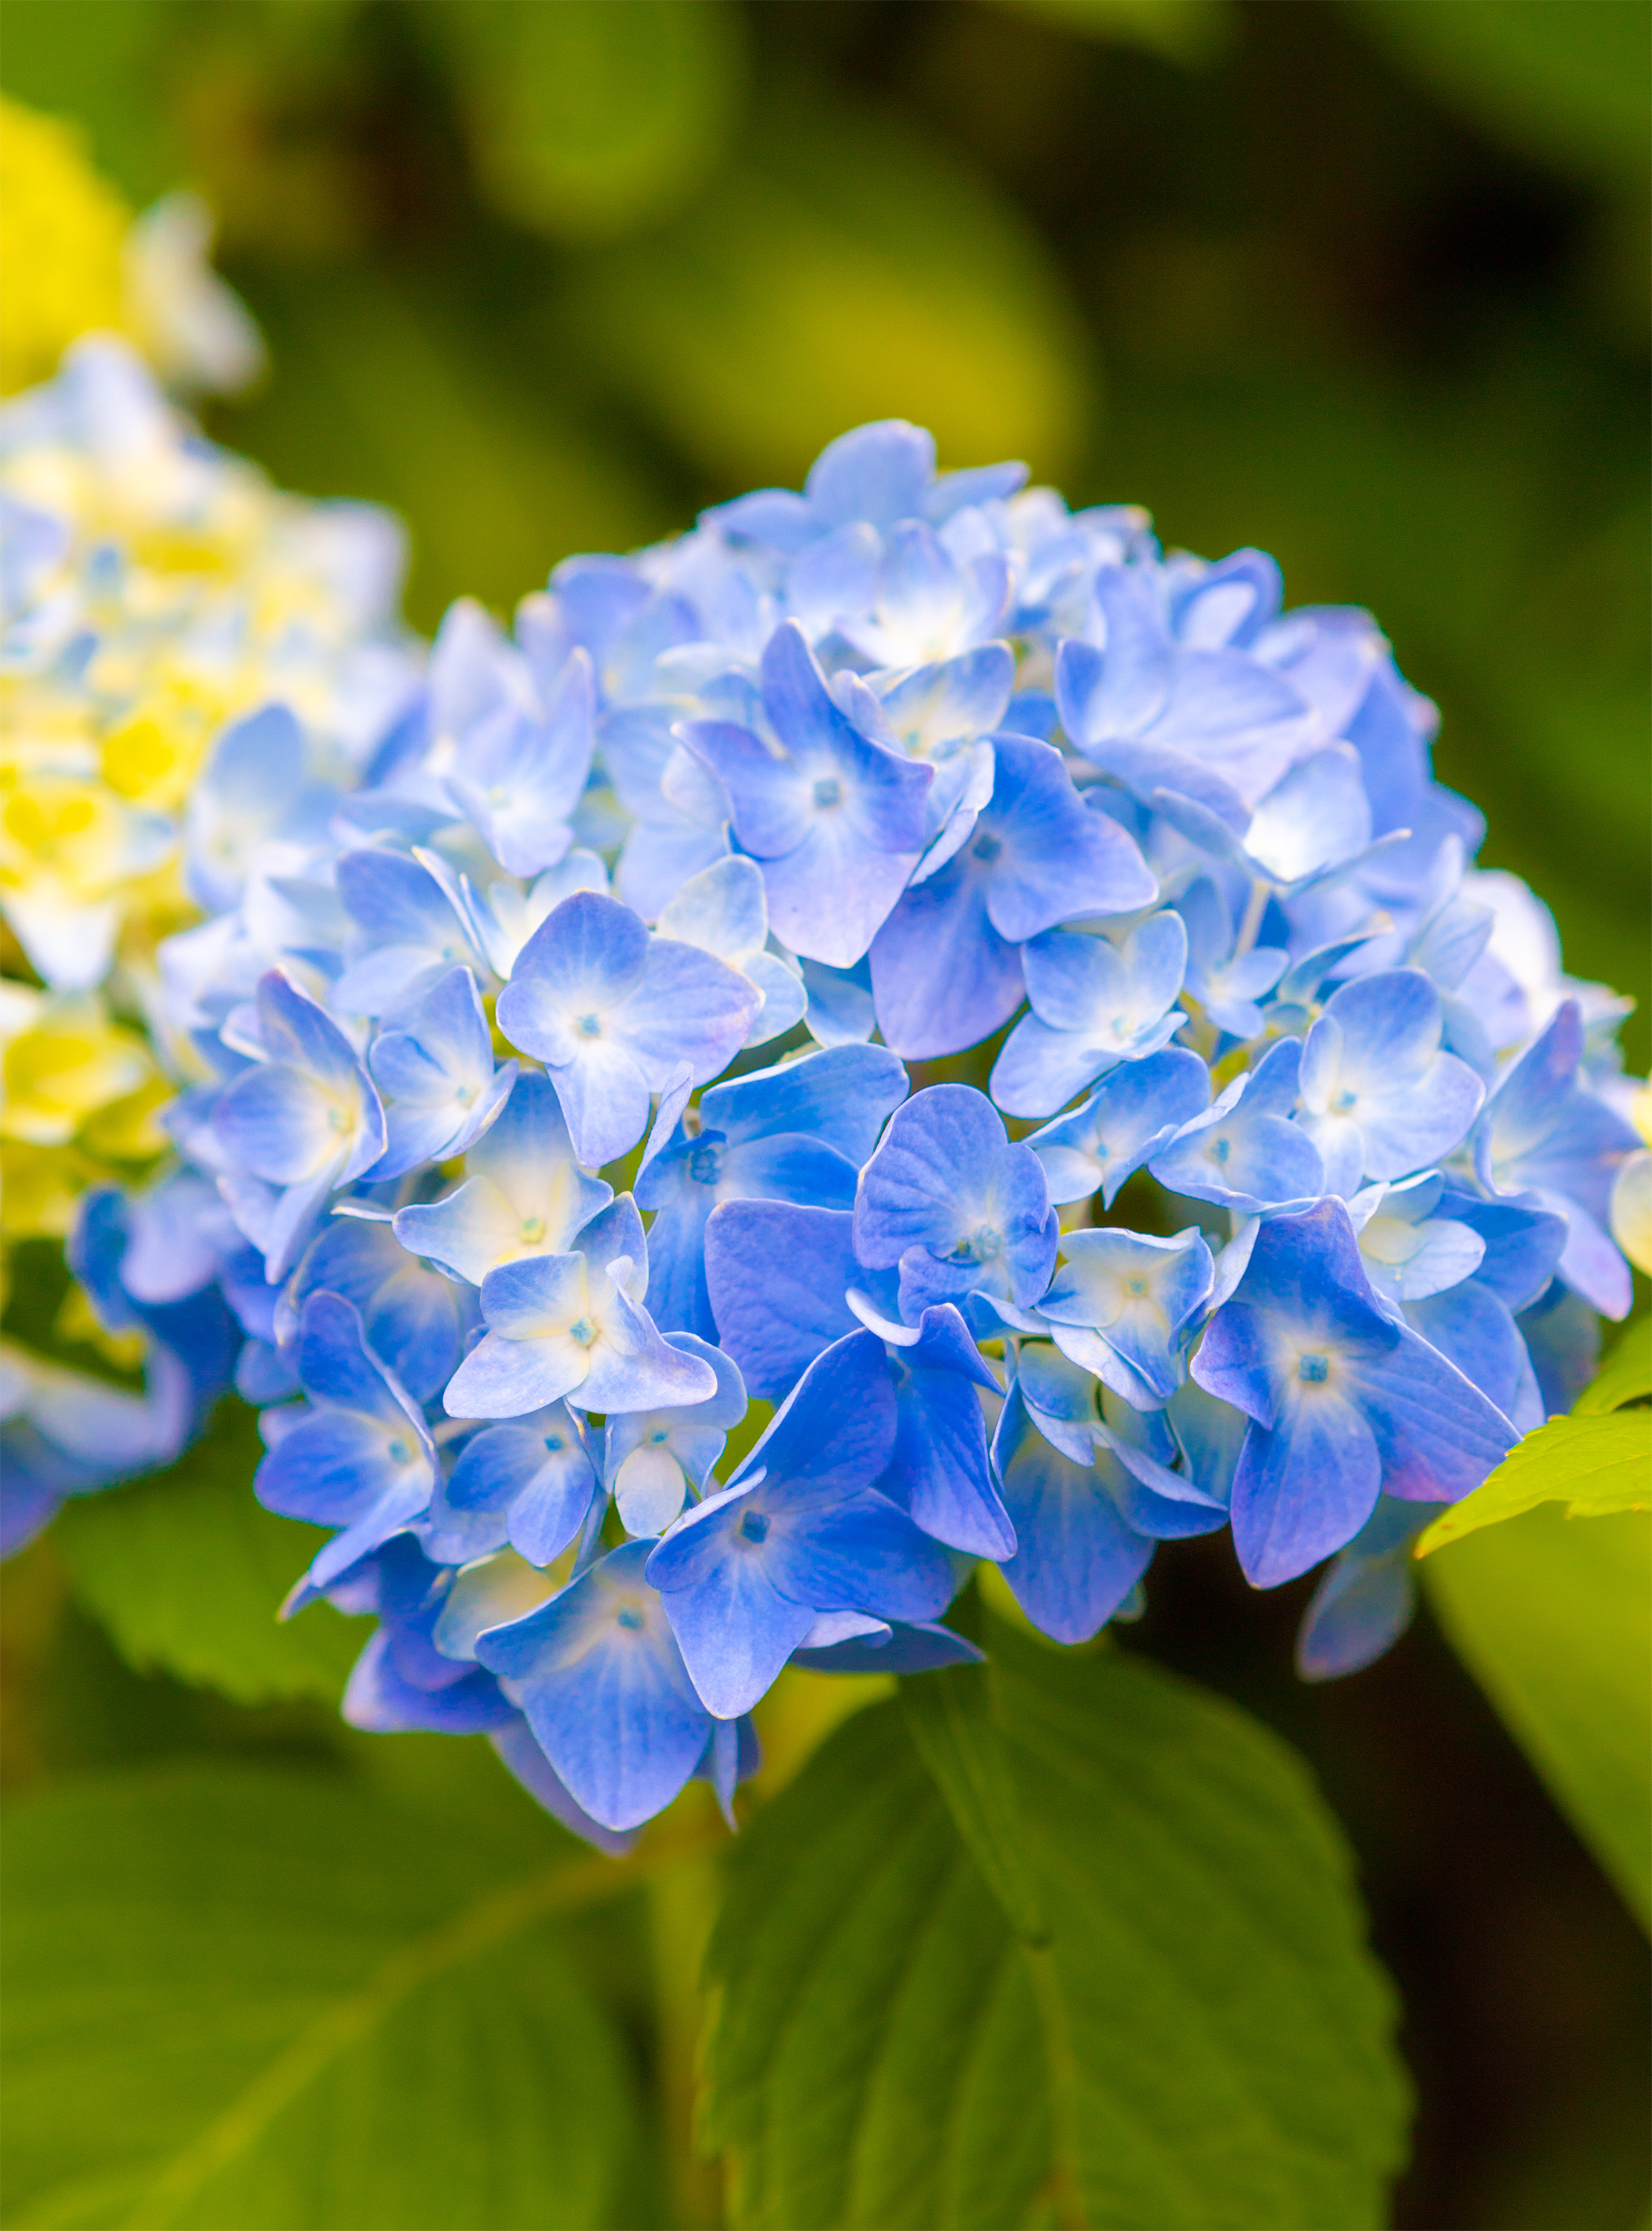 鮮やかな青色の紫陽花 あじさい 無料の高画質フリー写真素材 イメージズラボ